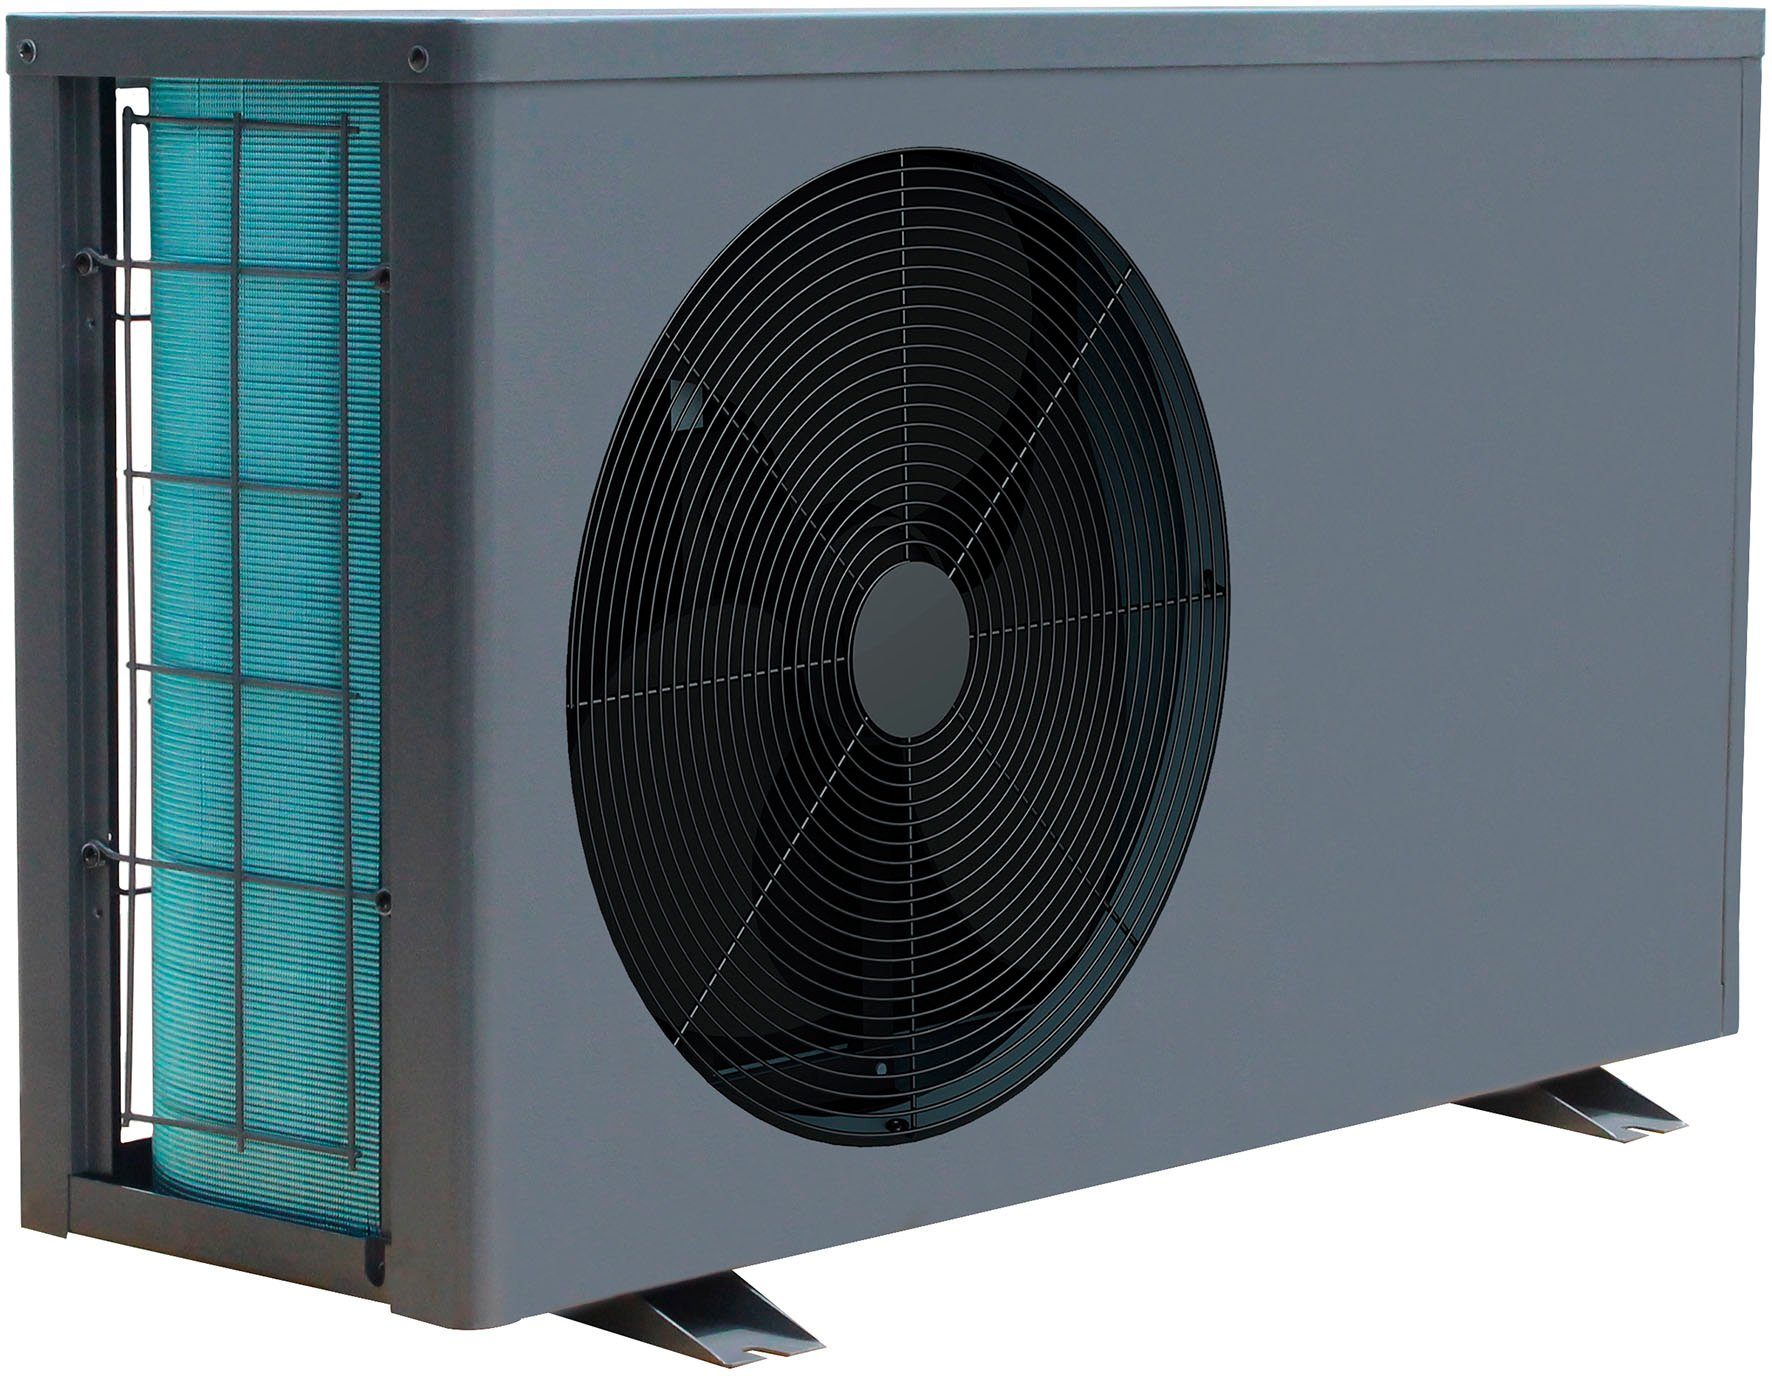 Ubbink Pool-Wärmepumpe Heatermax Inverter 70, 3 Betriebsarten: Silent-, Smart- und Power Mode